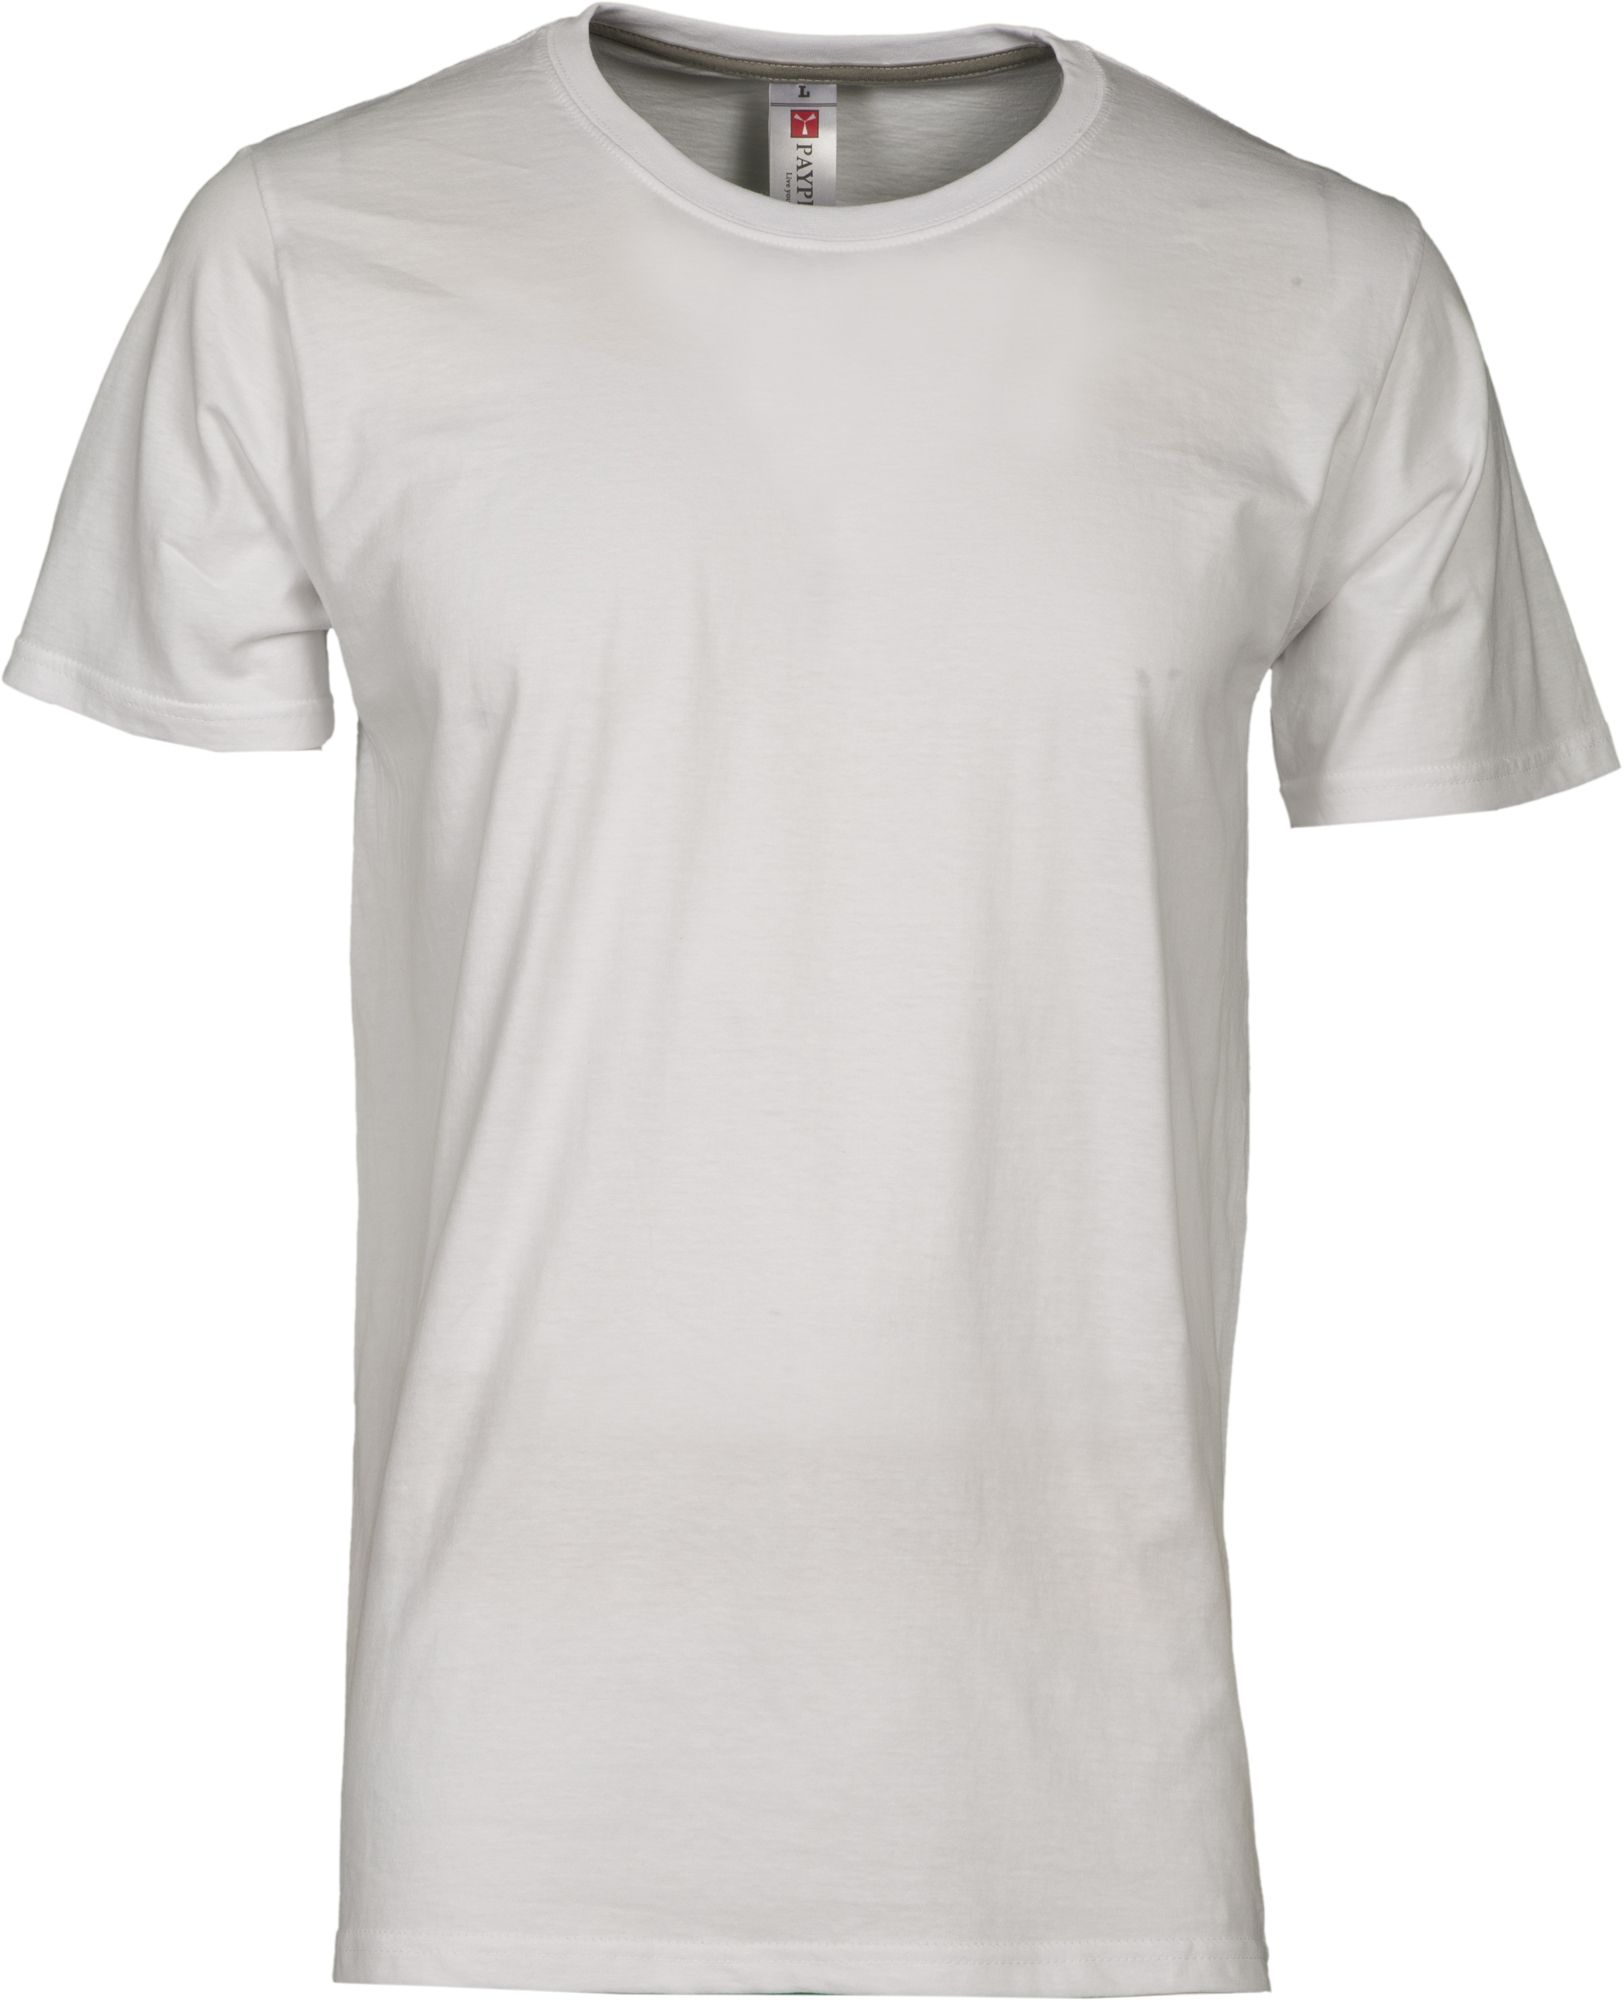 Pánské tričko SUNRISE PAYPER 4-5XL (nadměrná trička do 5XL)